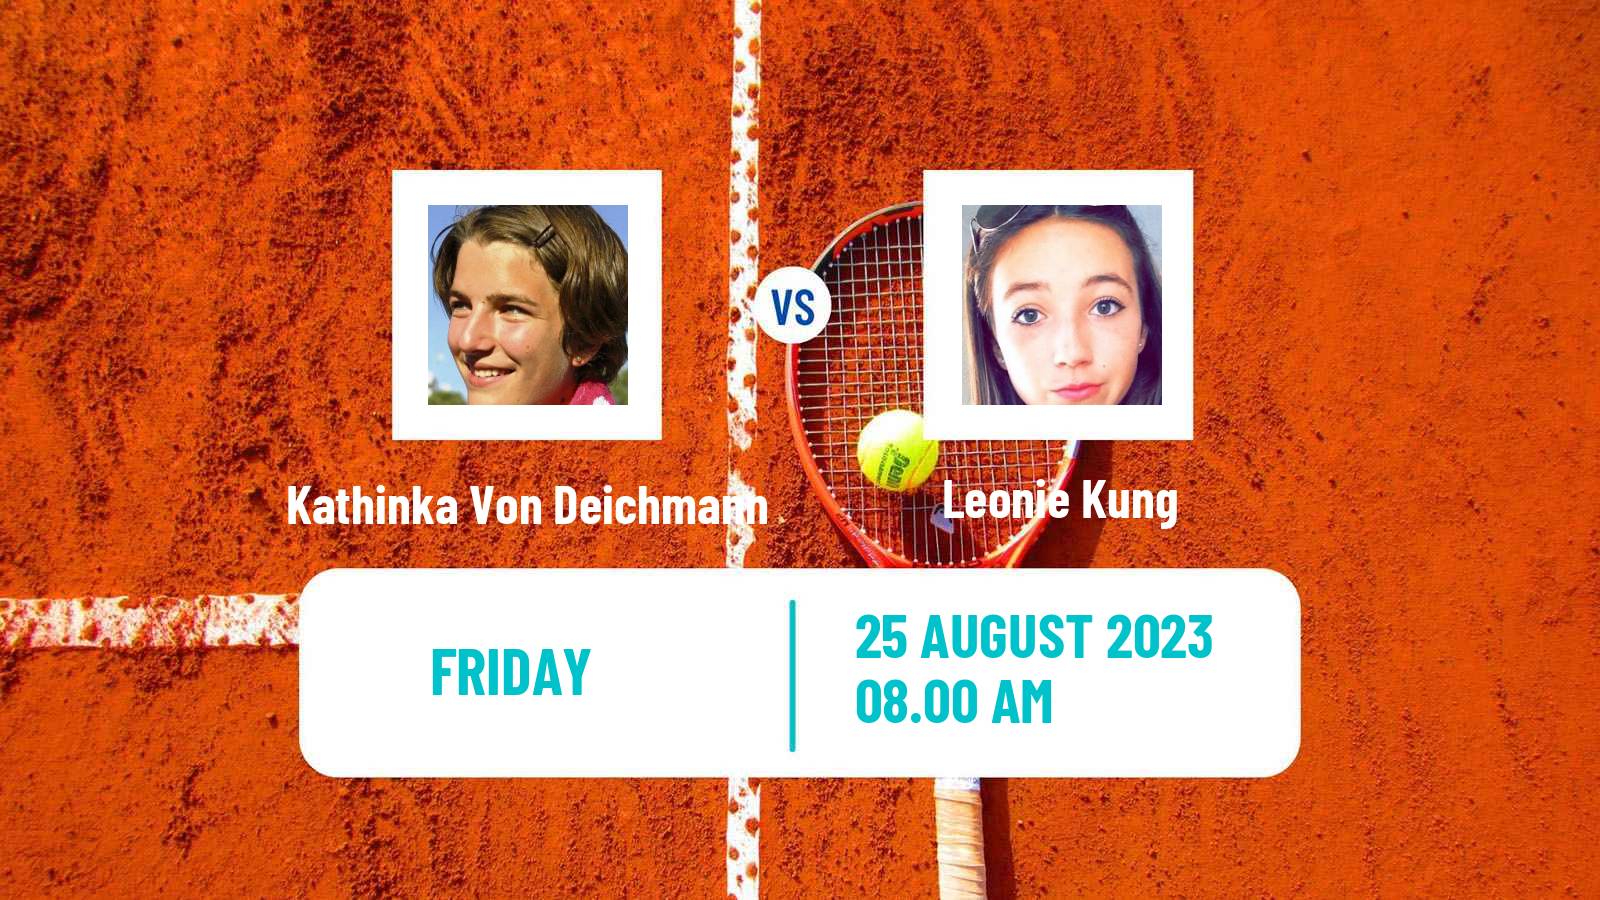 Tennis ITF W25 Verbier Women Kathinka Von Deichmann - Leonie Kung